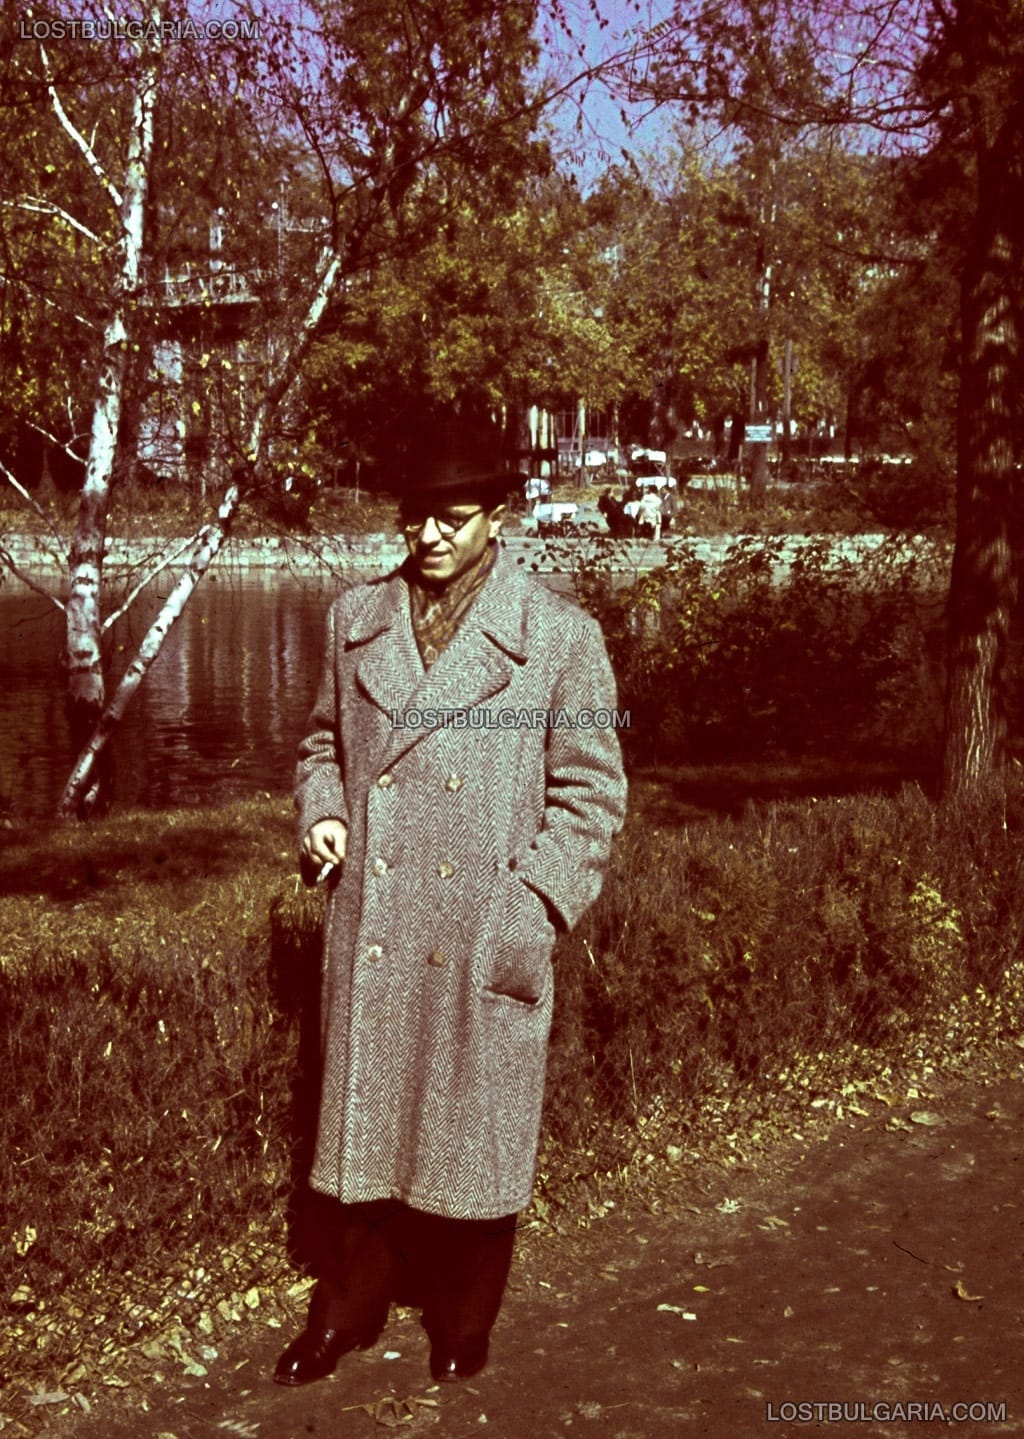 София, Борисовата градина, елегантно облечен мъж до езерото "Ариана", на заден план -  кръчмата на островчето, цветен диапозитив AGFA, около 1943 г.